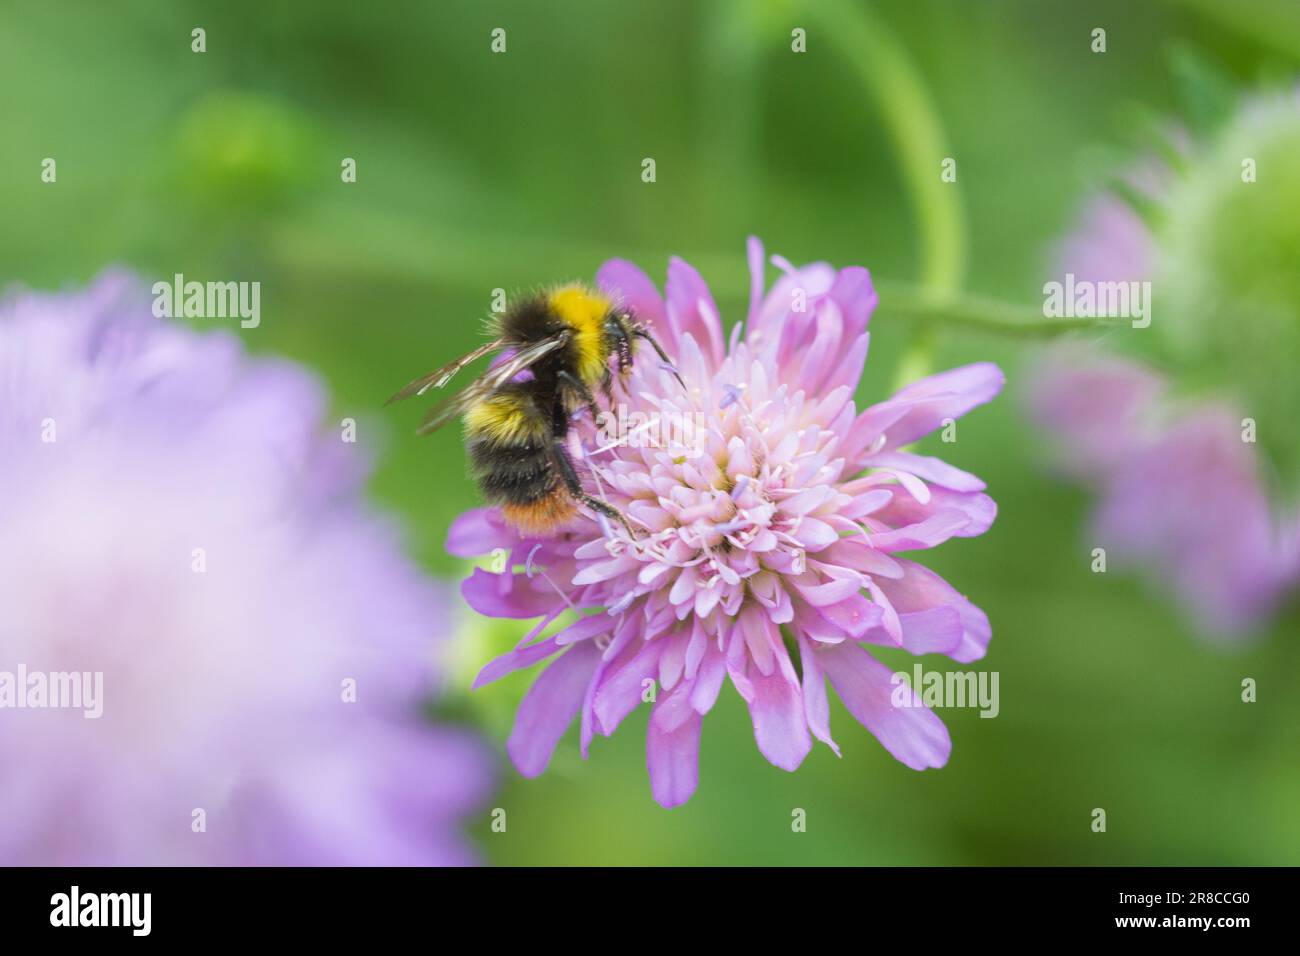 Nature / abri de jardinage - Un bourdon pour nectar sur plante florale Scabious. Helen Cowles / Alamy Banque D'Images